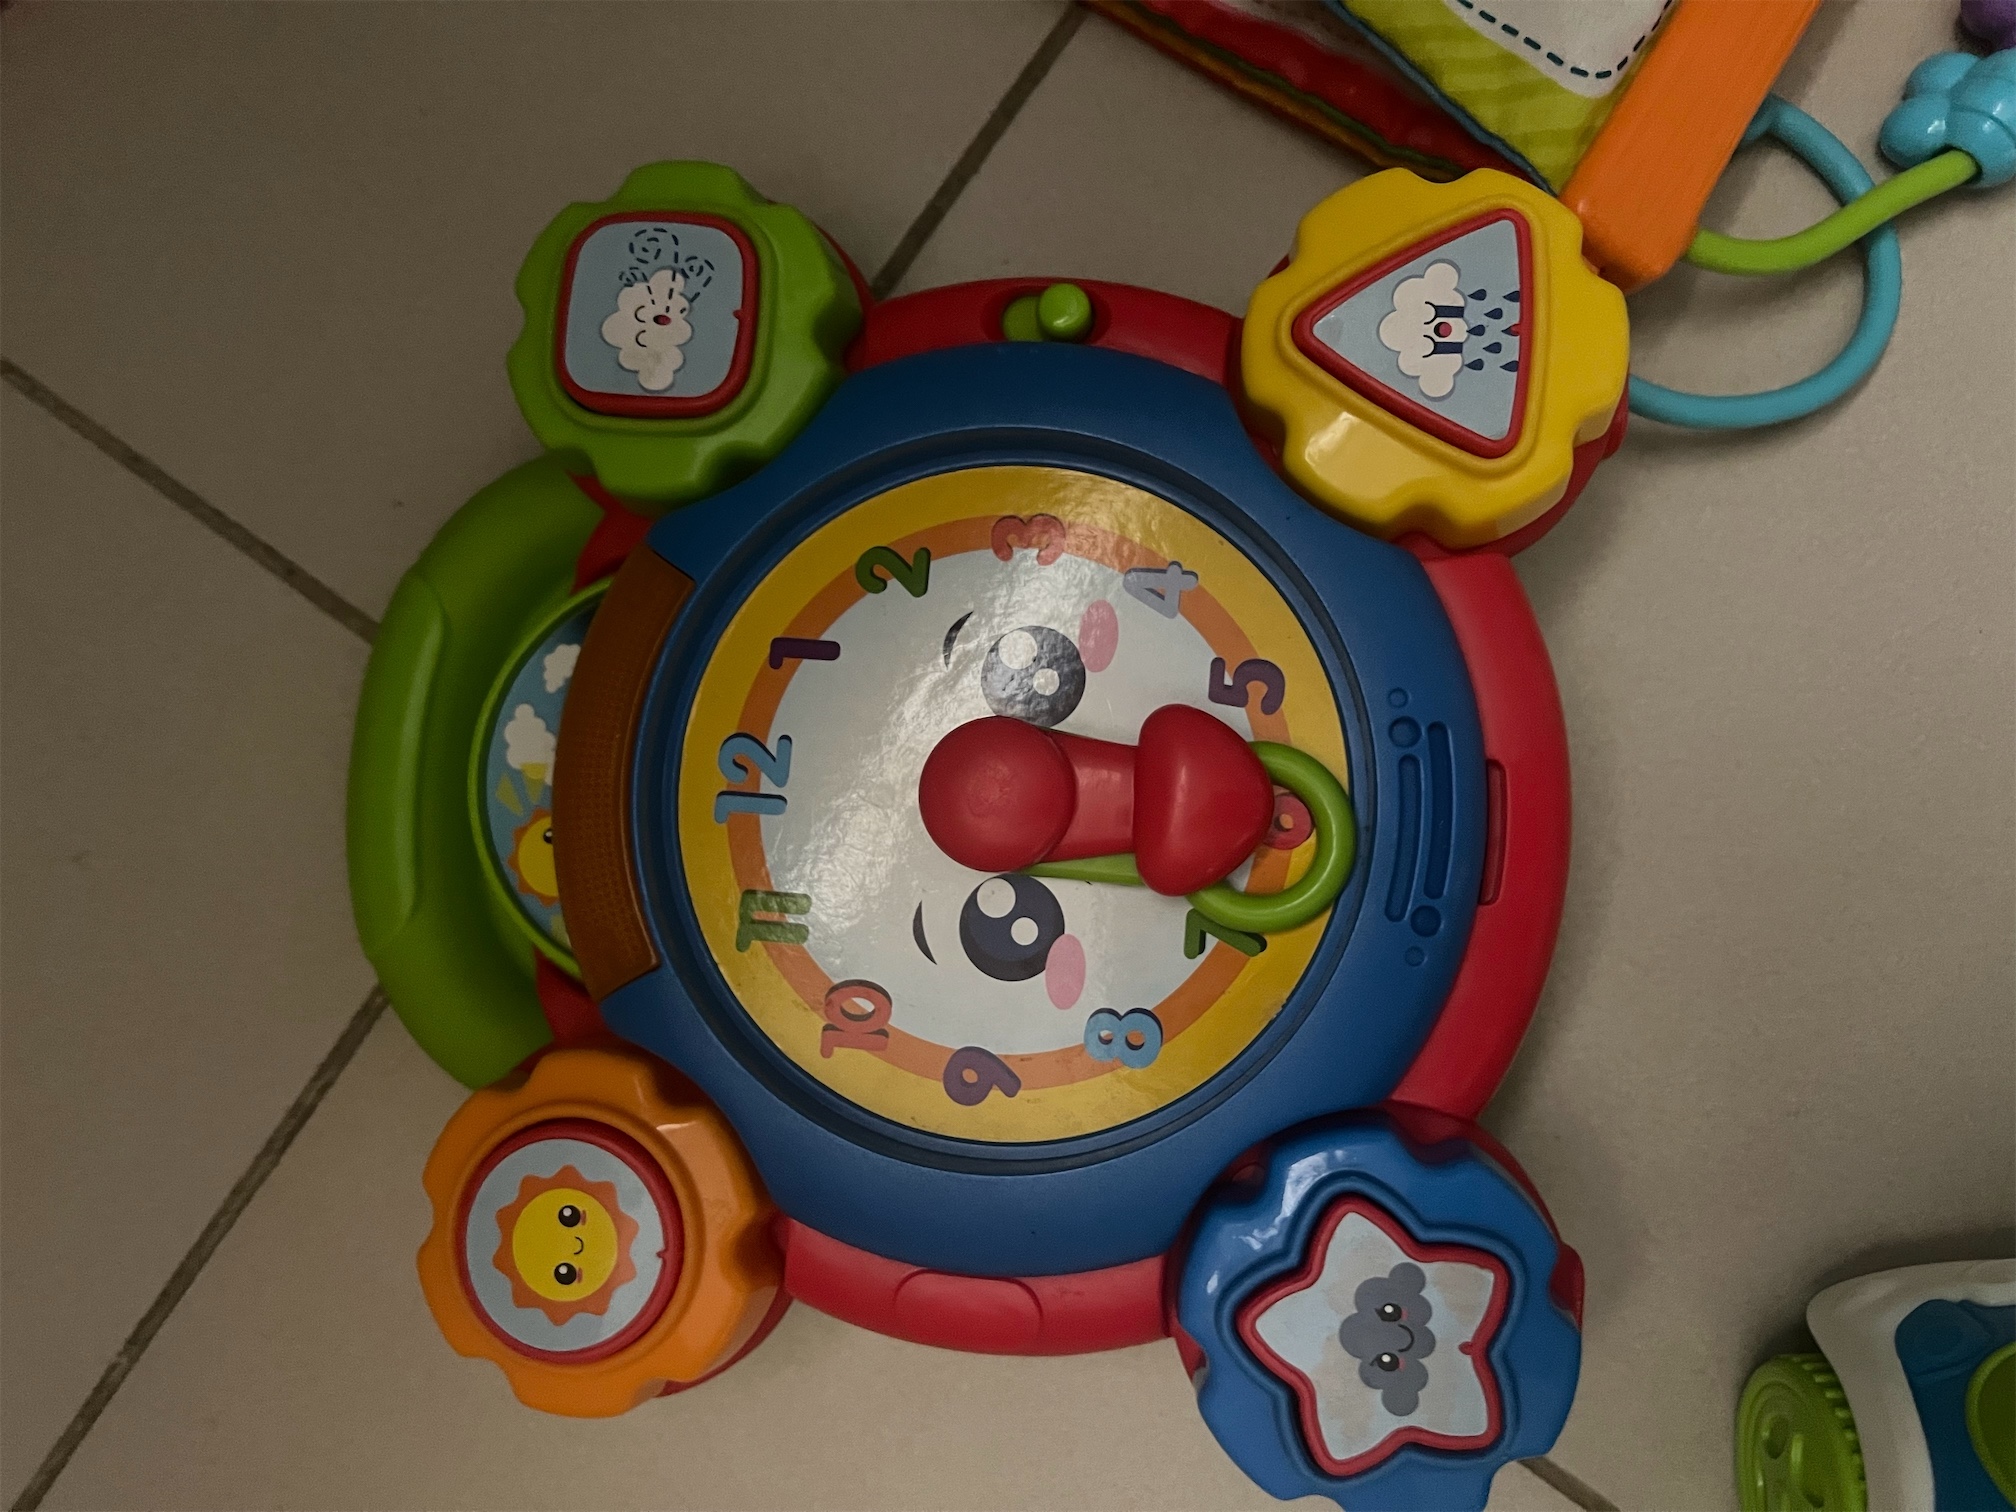 juguetes - Juguetes para niños/as de 6meses a 2 años  7